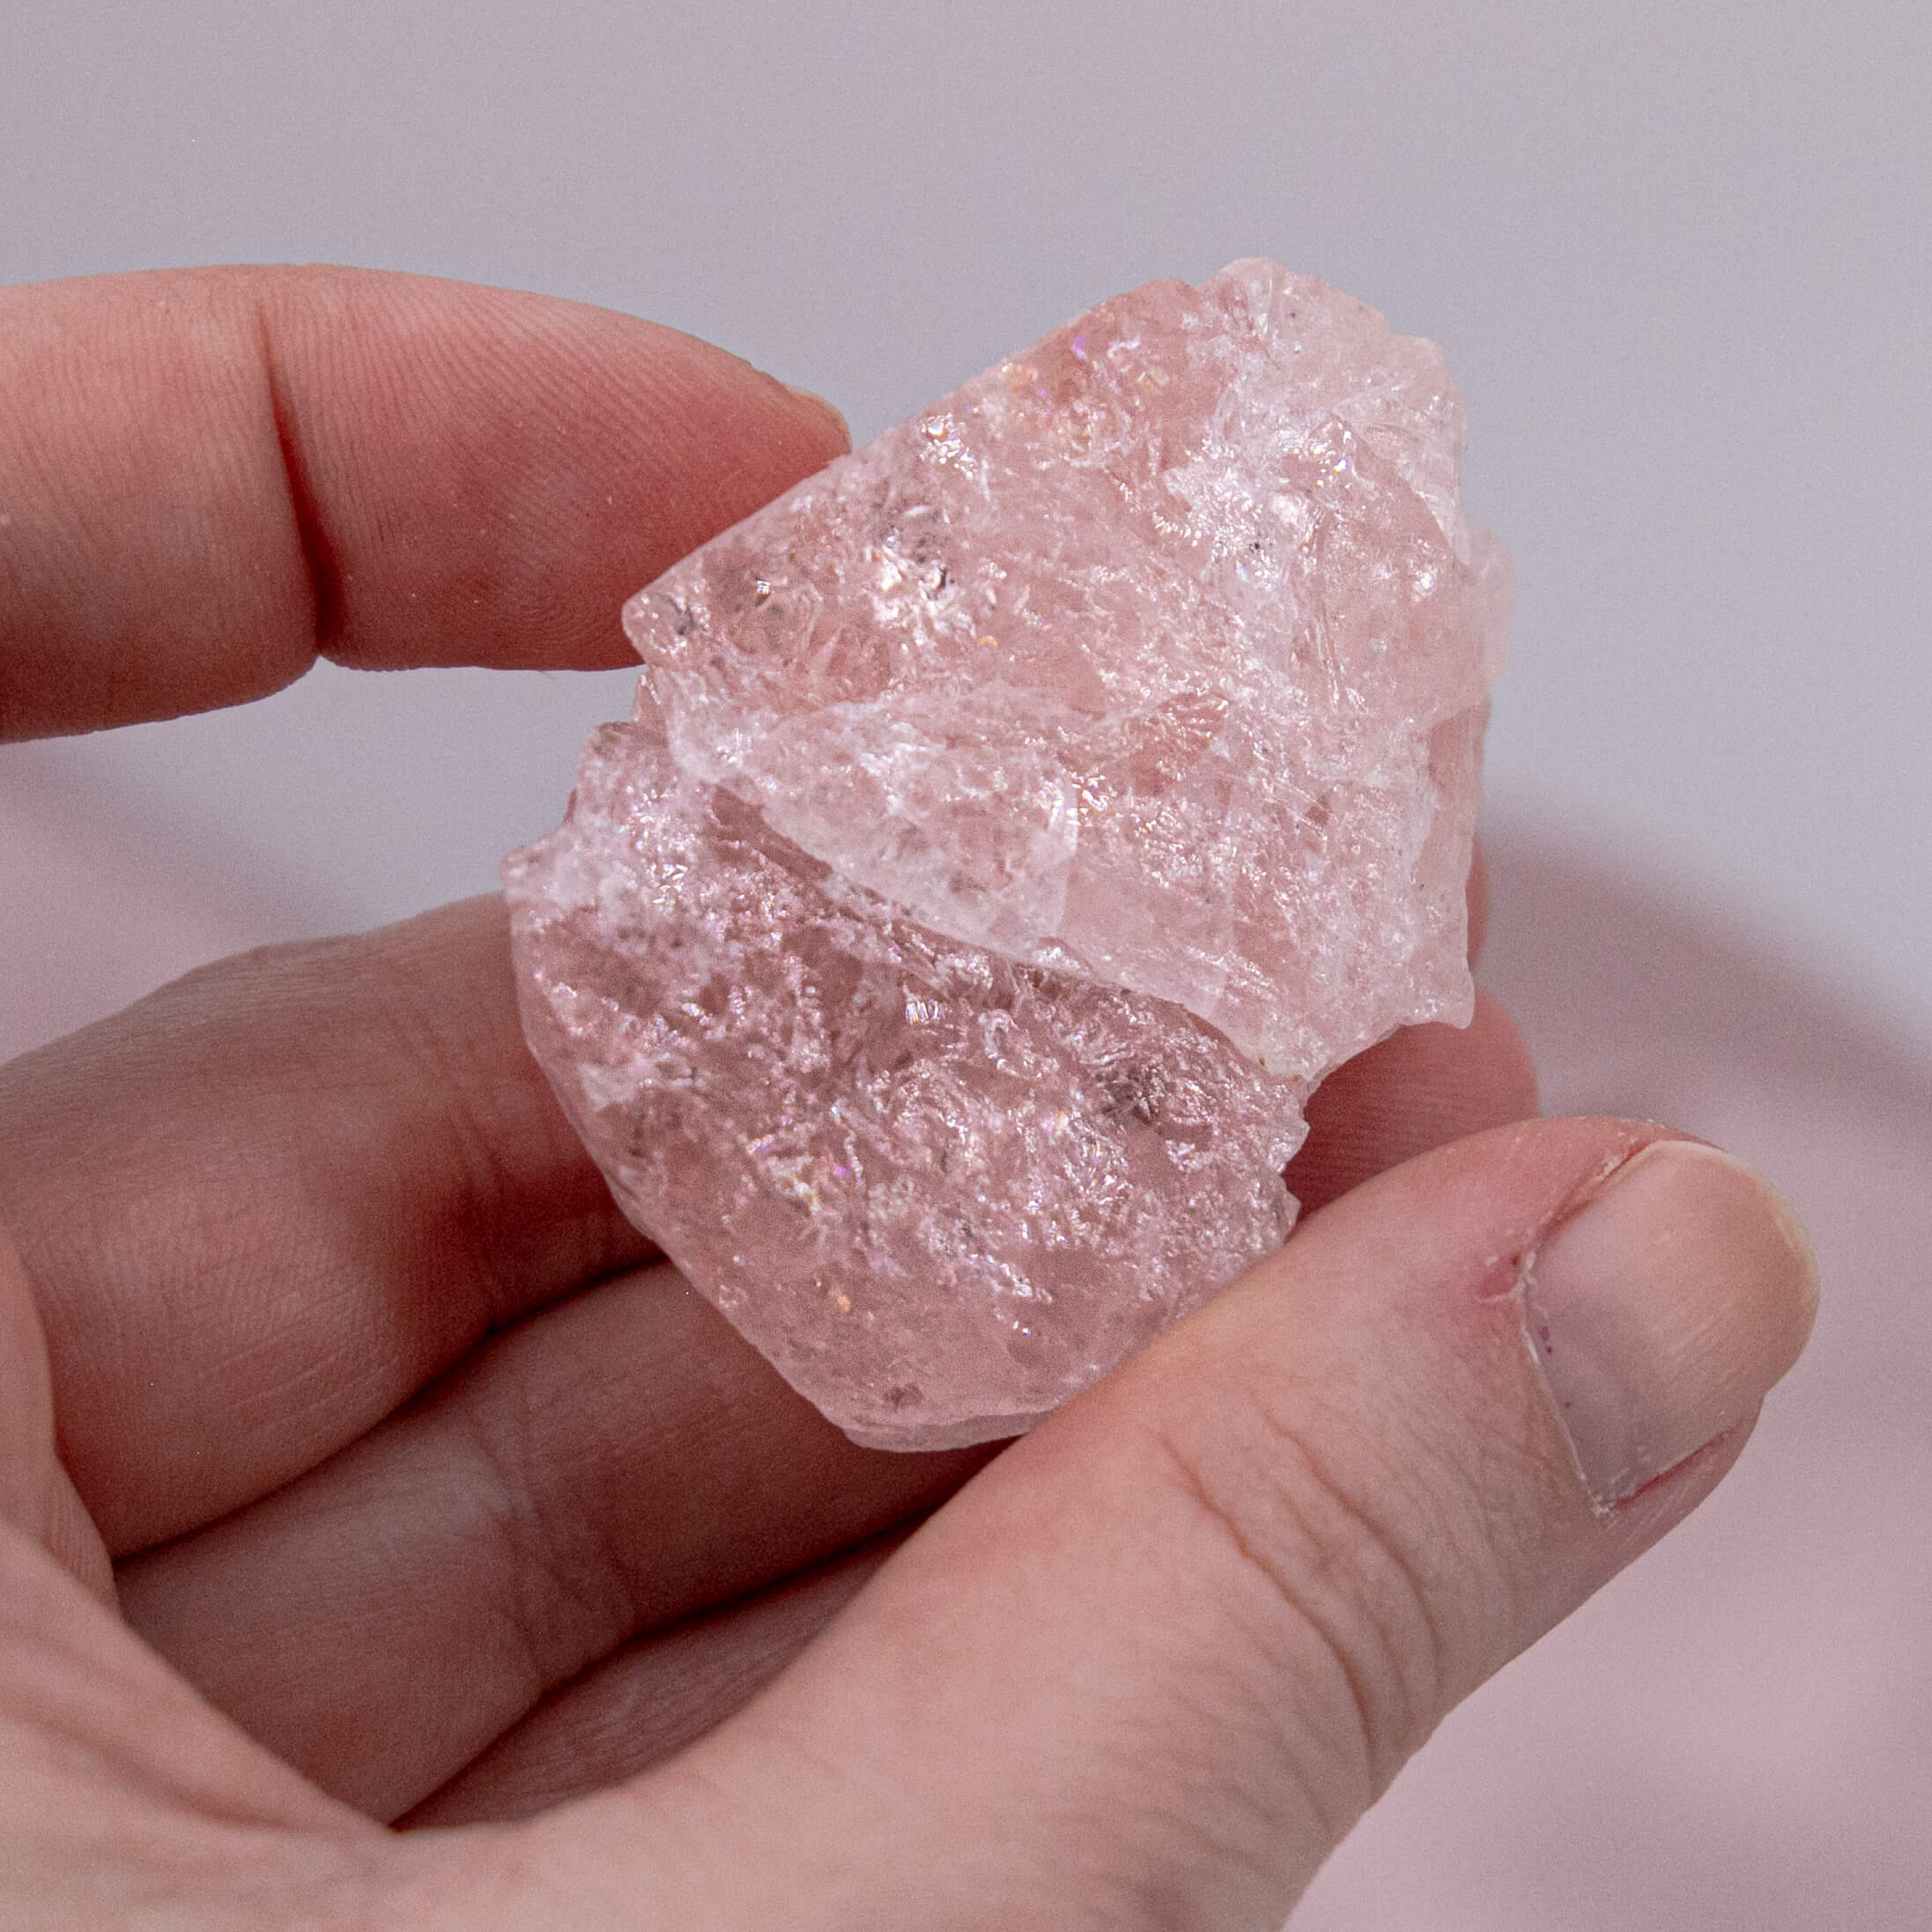 Seltenheit besonders extravagant elegant Kristall Heilstein Edelstein Morganit seltene rosafarbene Beryll Morganit ist durch seine hohe Schwingung einer der wichtigsten Kristalle für Liebesangelegenheiten